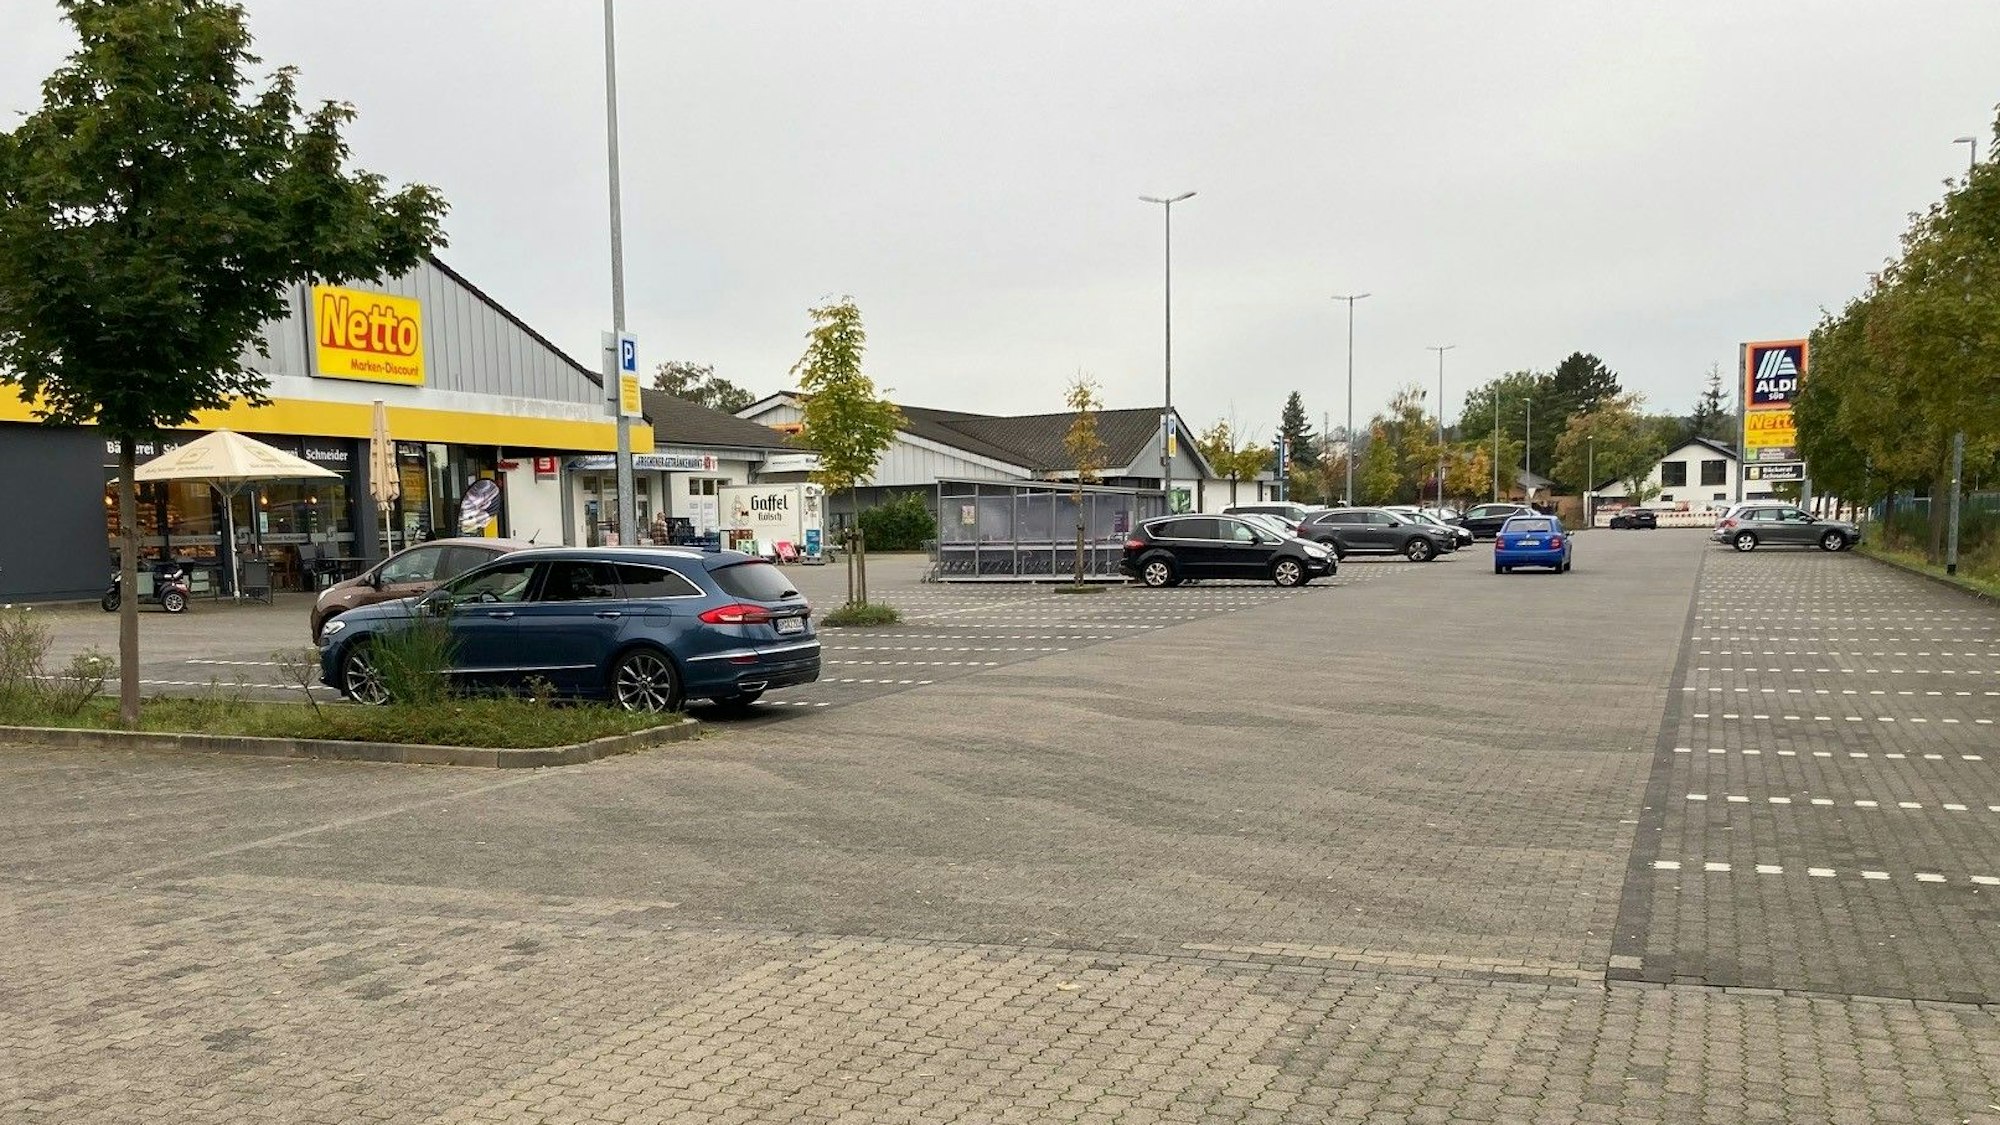 Das Bild zeigt einen Parkplatz von mehreren Discountern.